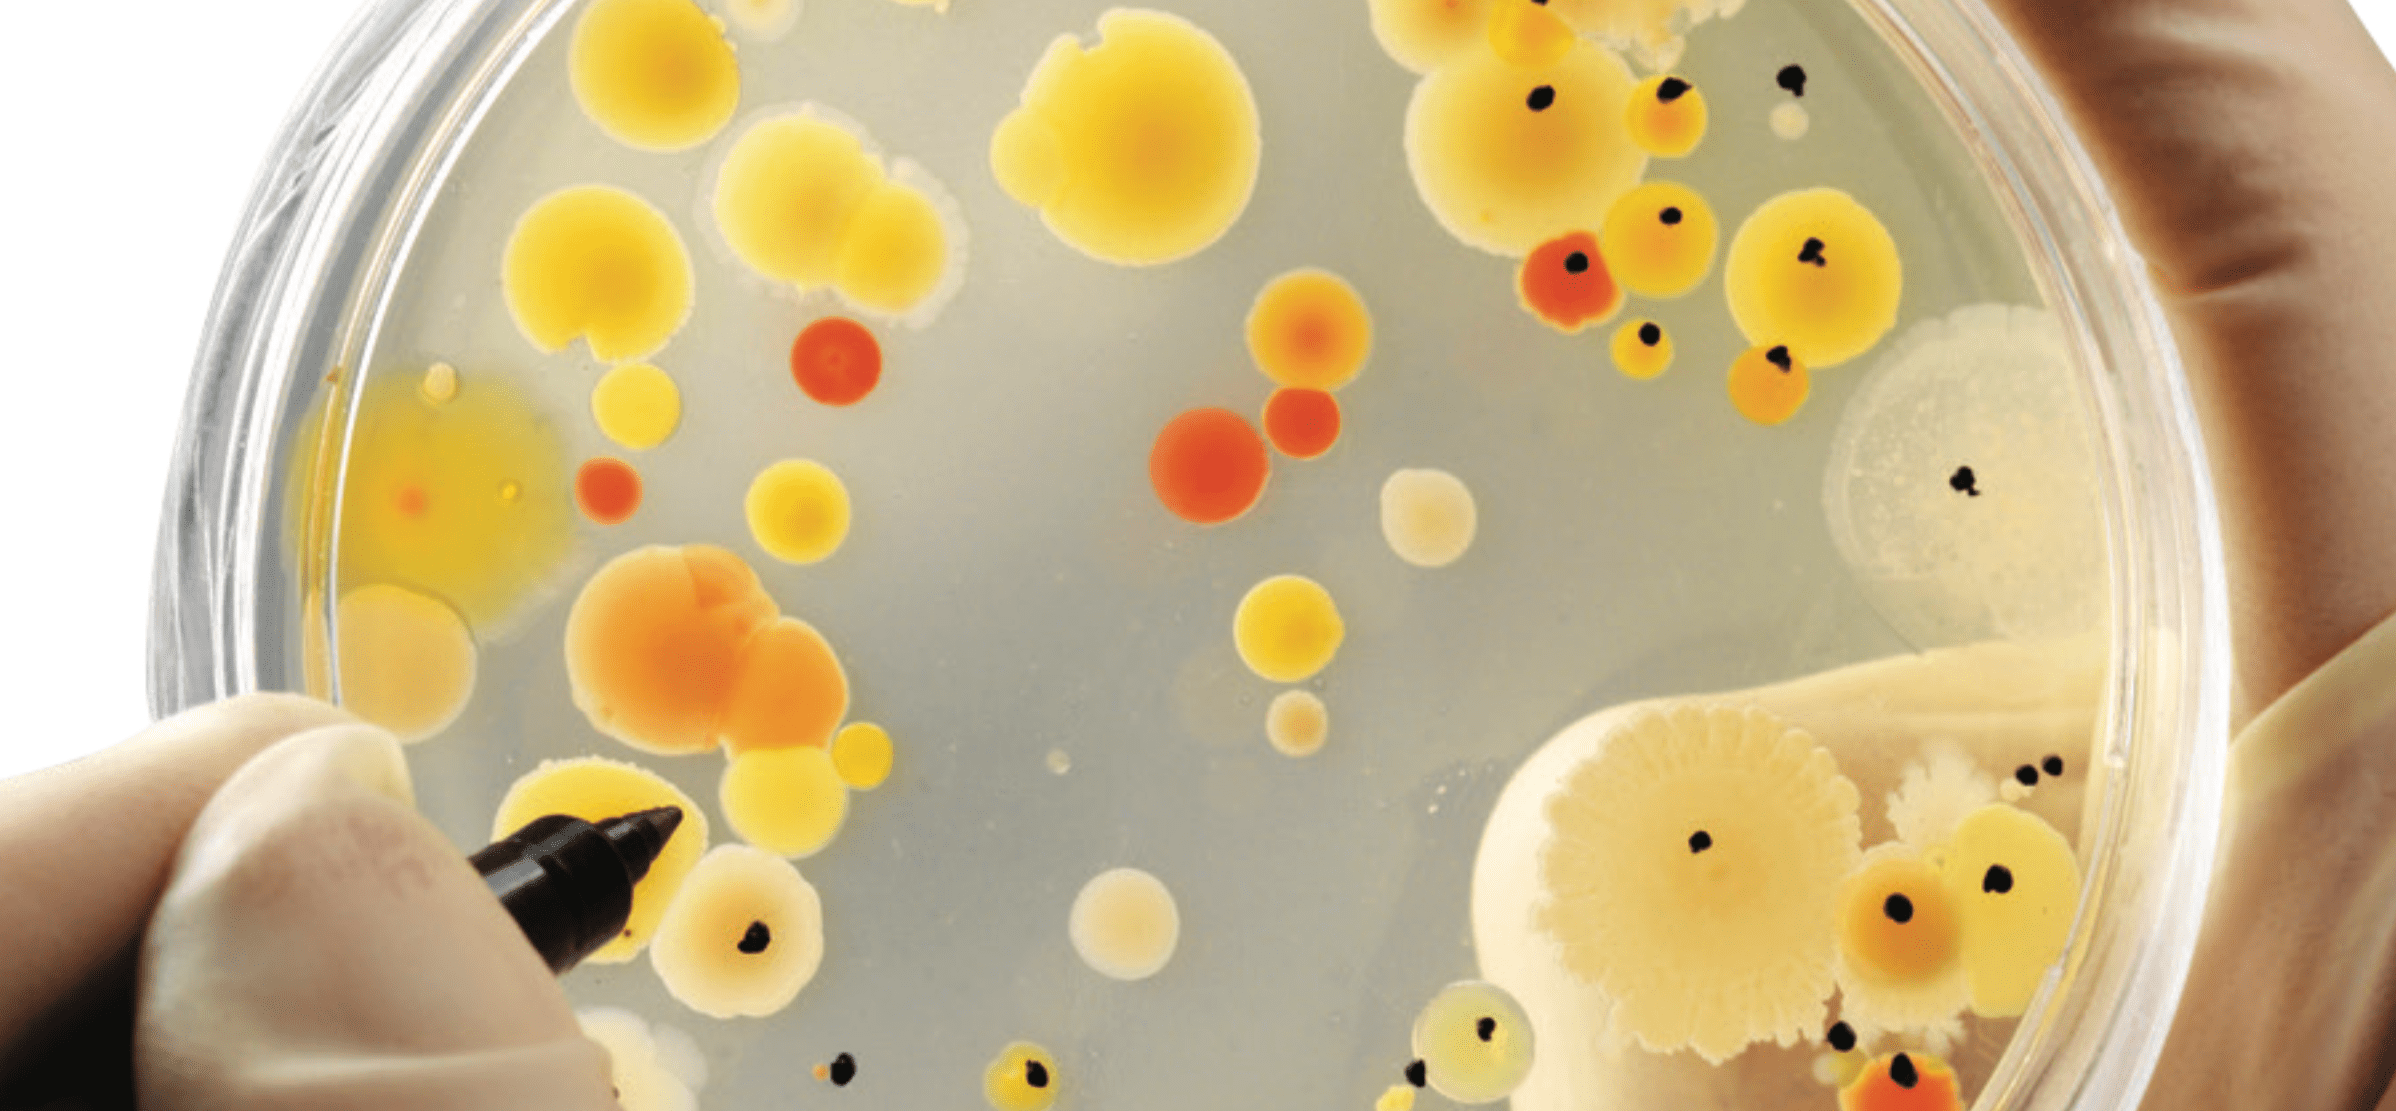 Placa de Petri de células de diferentes colores.